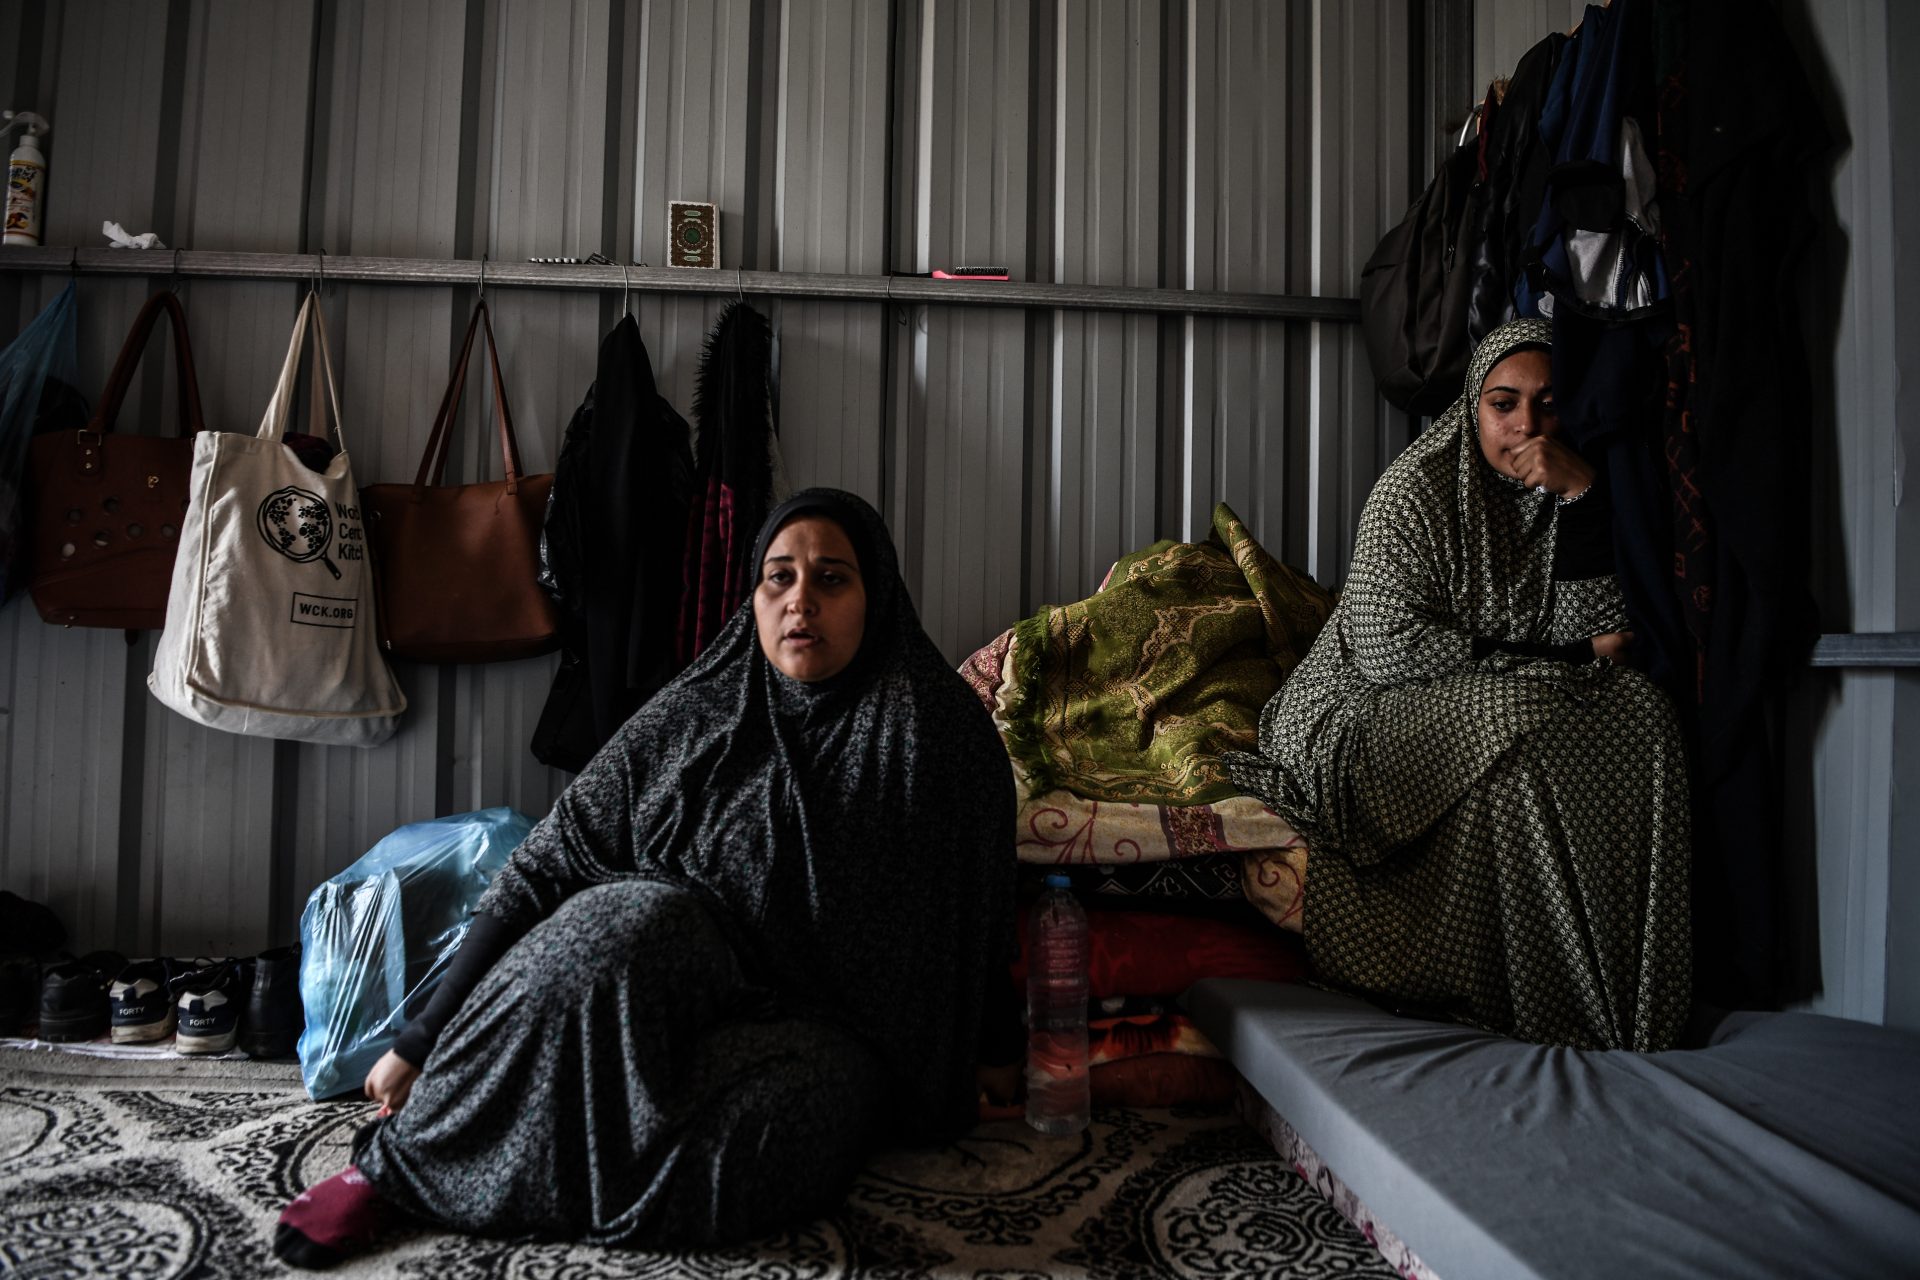 UNRWA Gaza sous attaque, les femmes première cible de la guerre